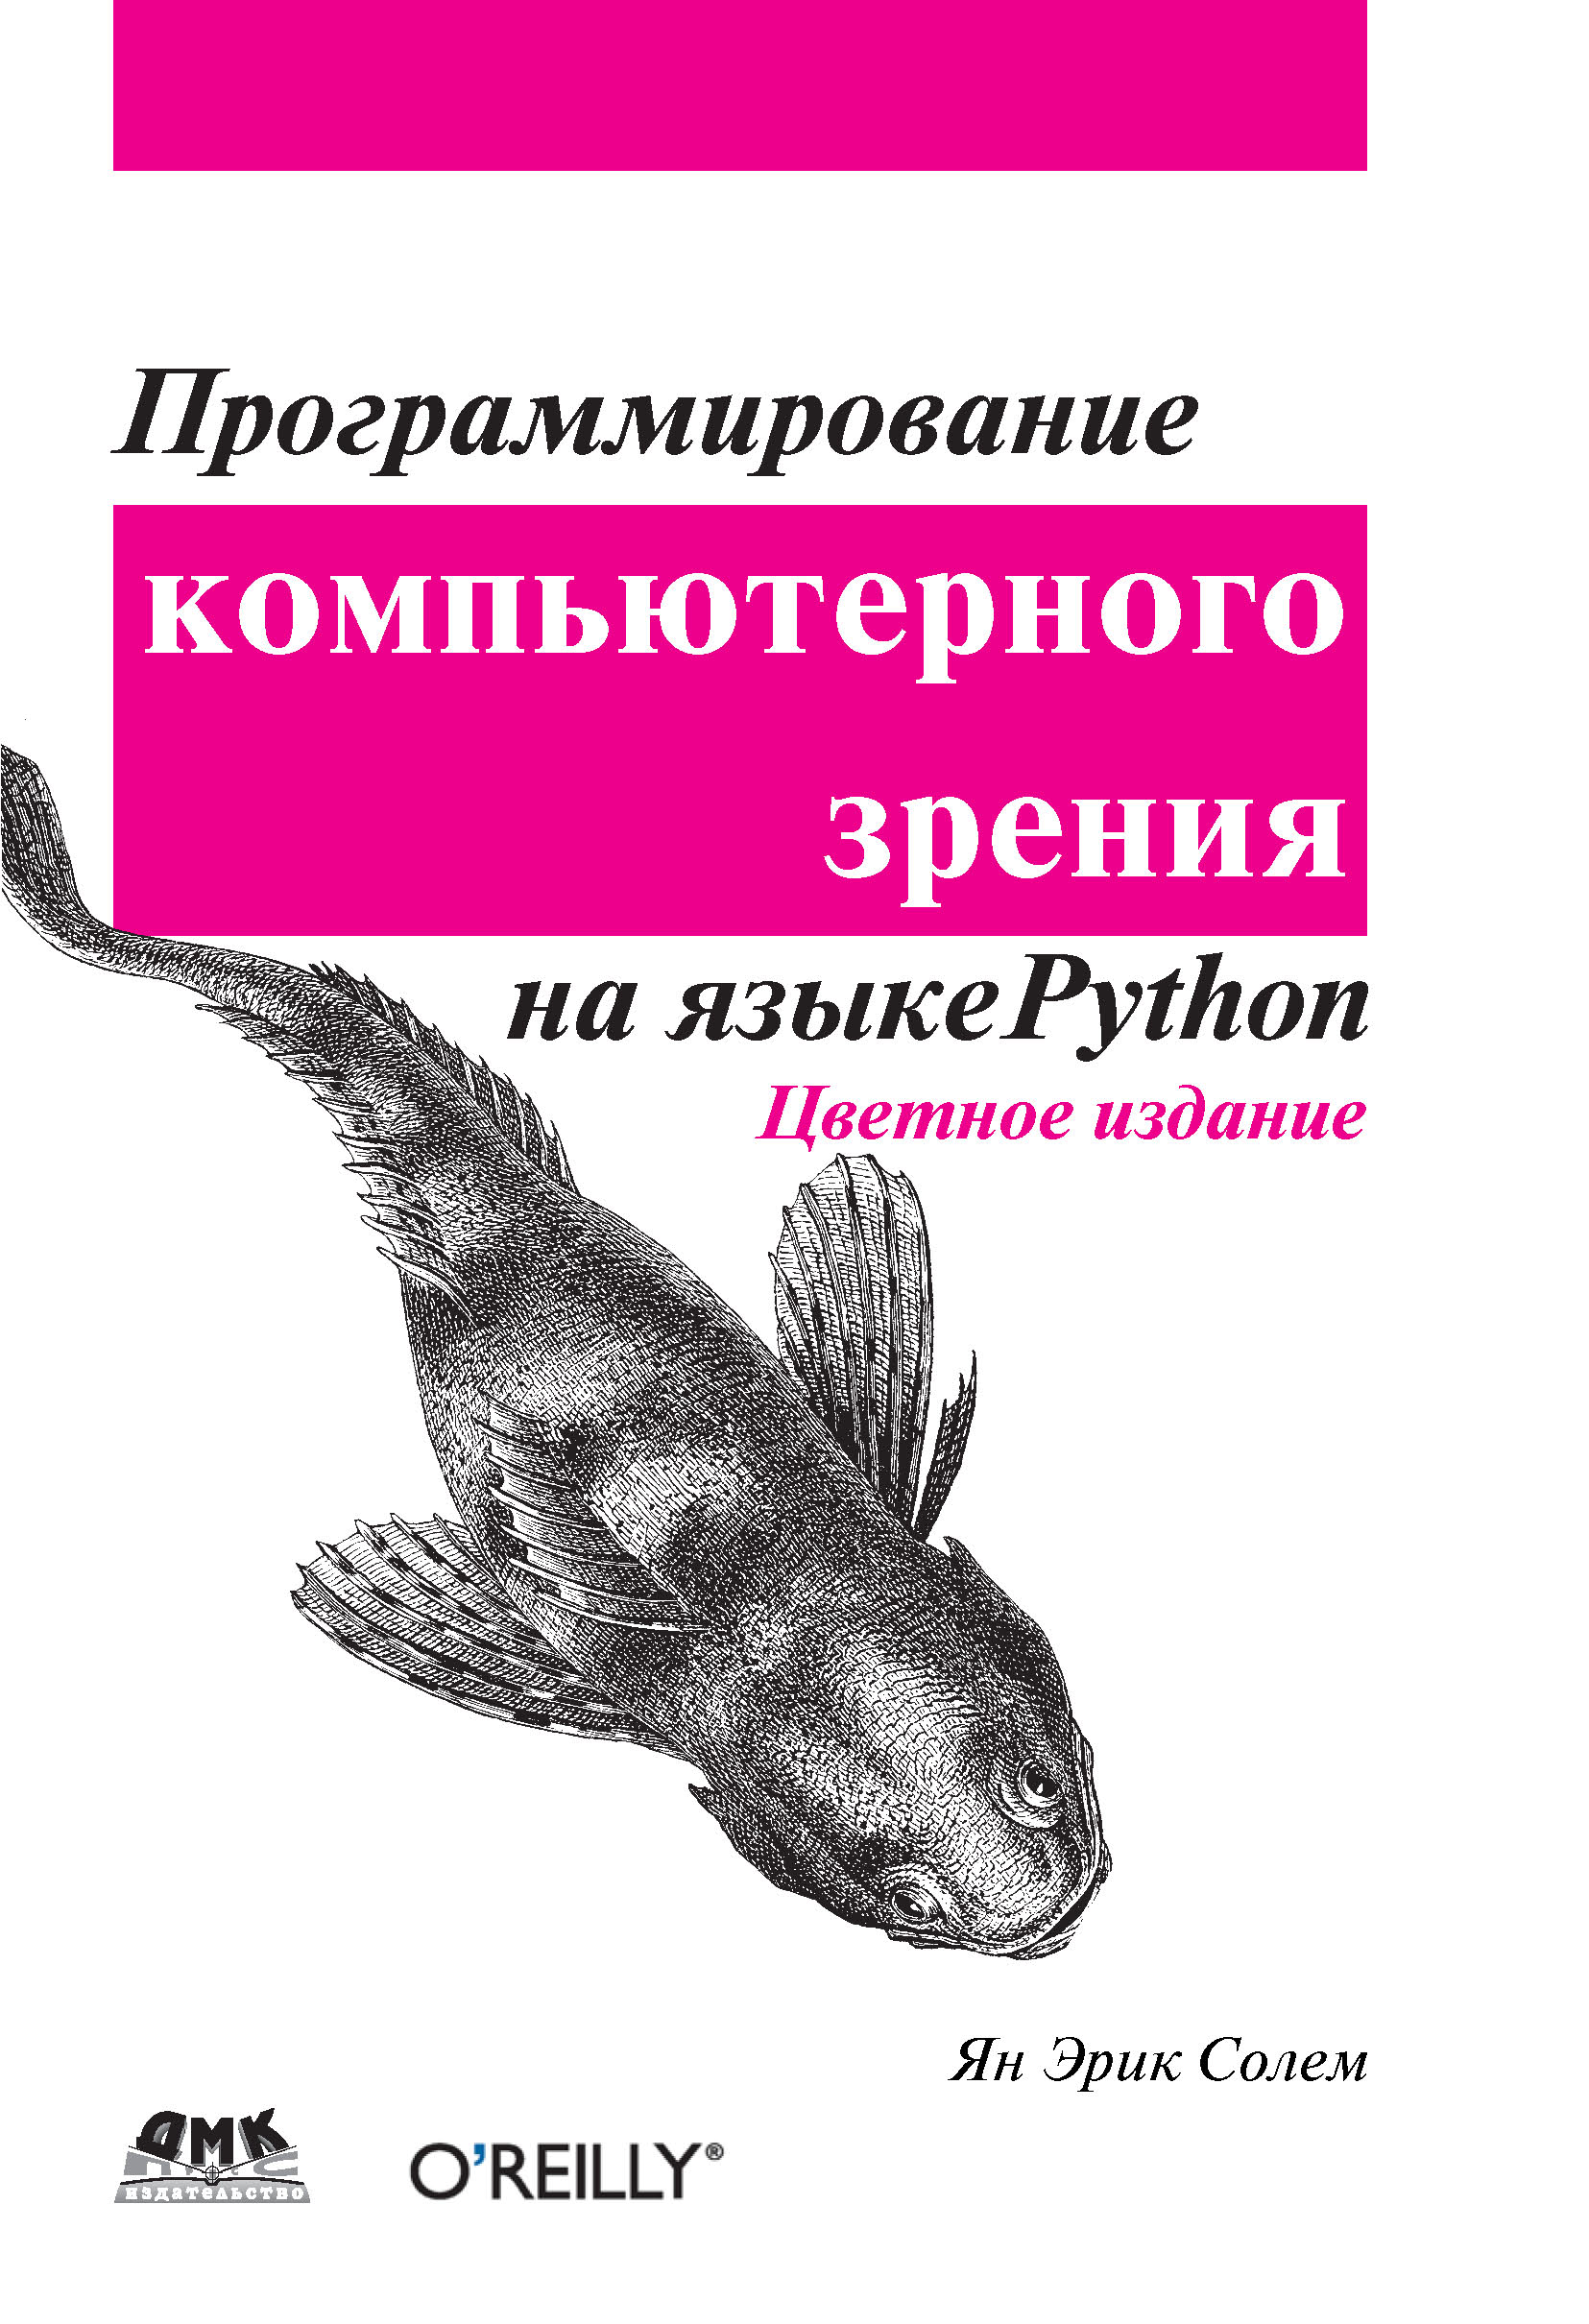 Книги про программирование. Программирование компьютерного зрения на языке Python. Книги по программированию. Программирование на питон книга.